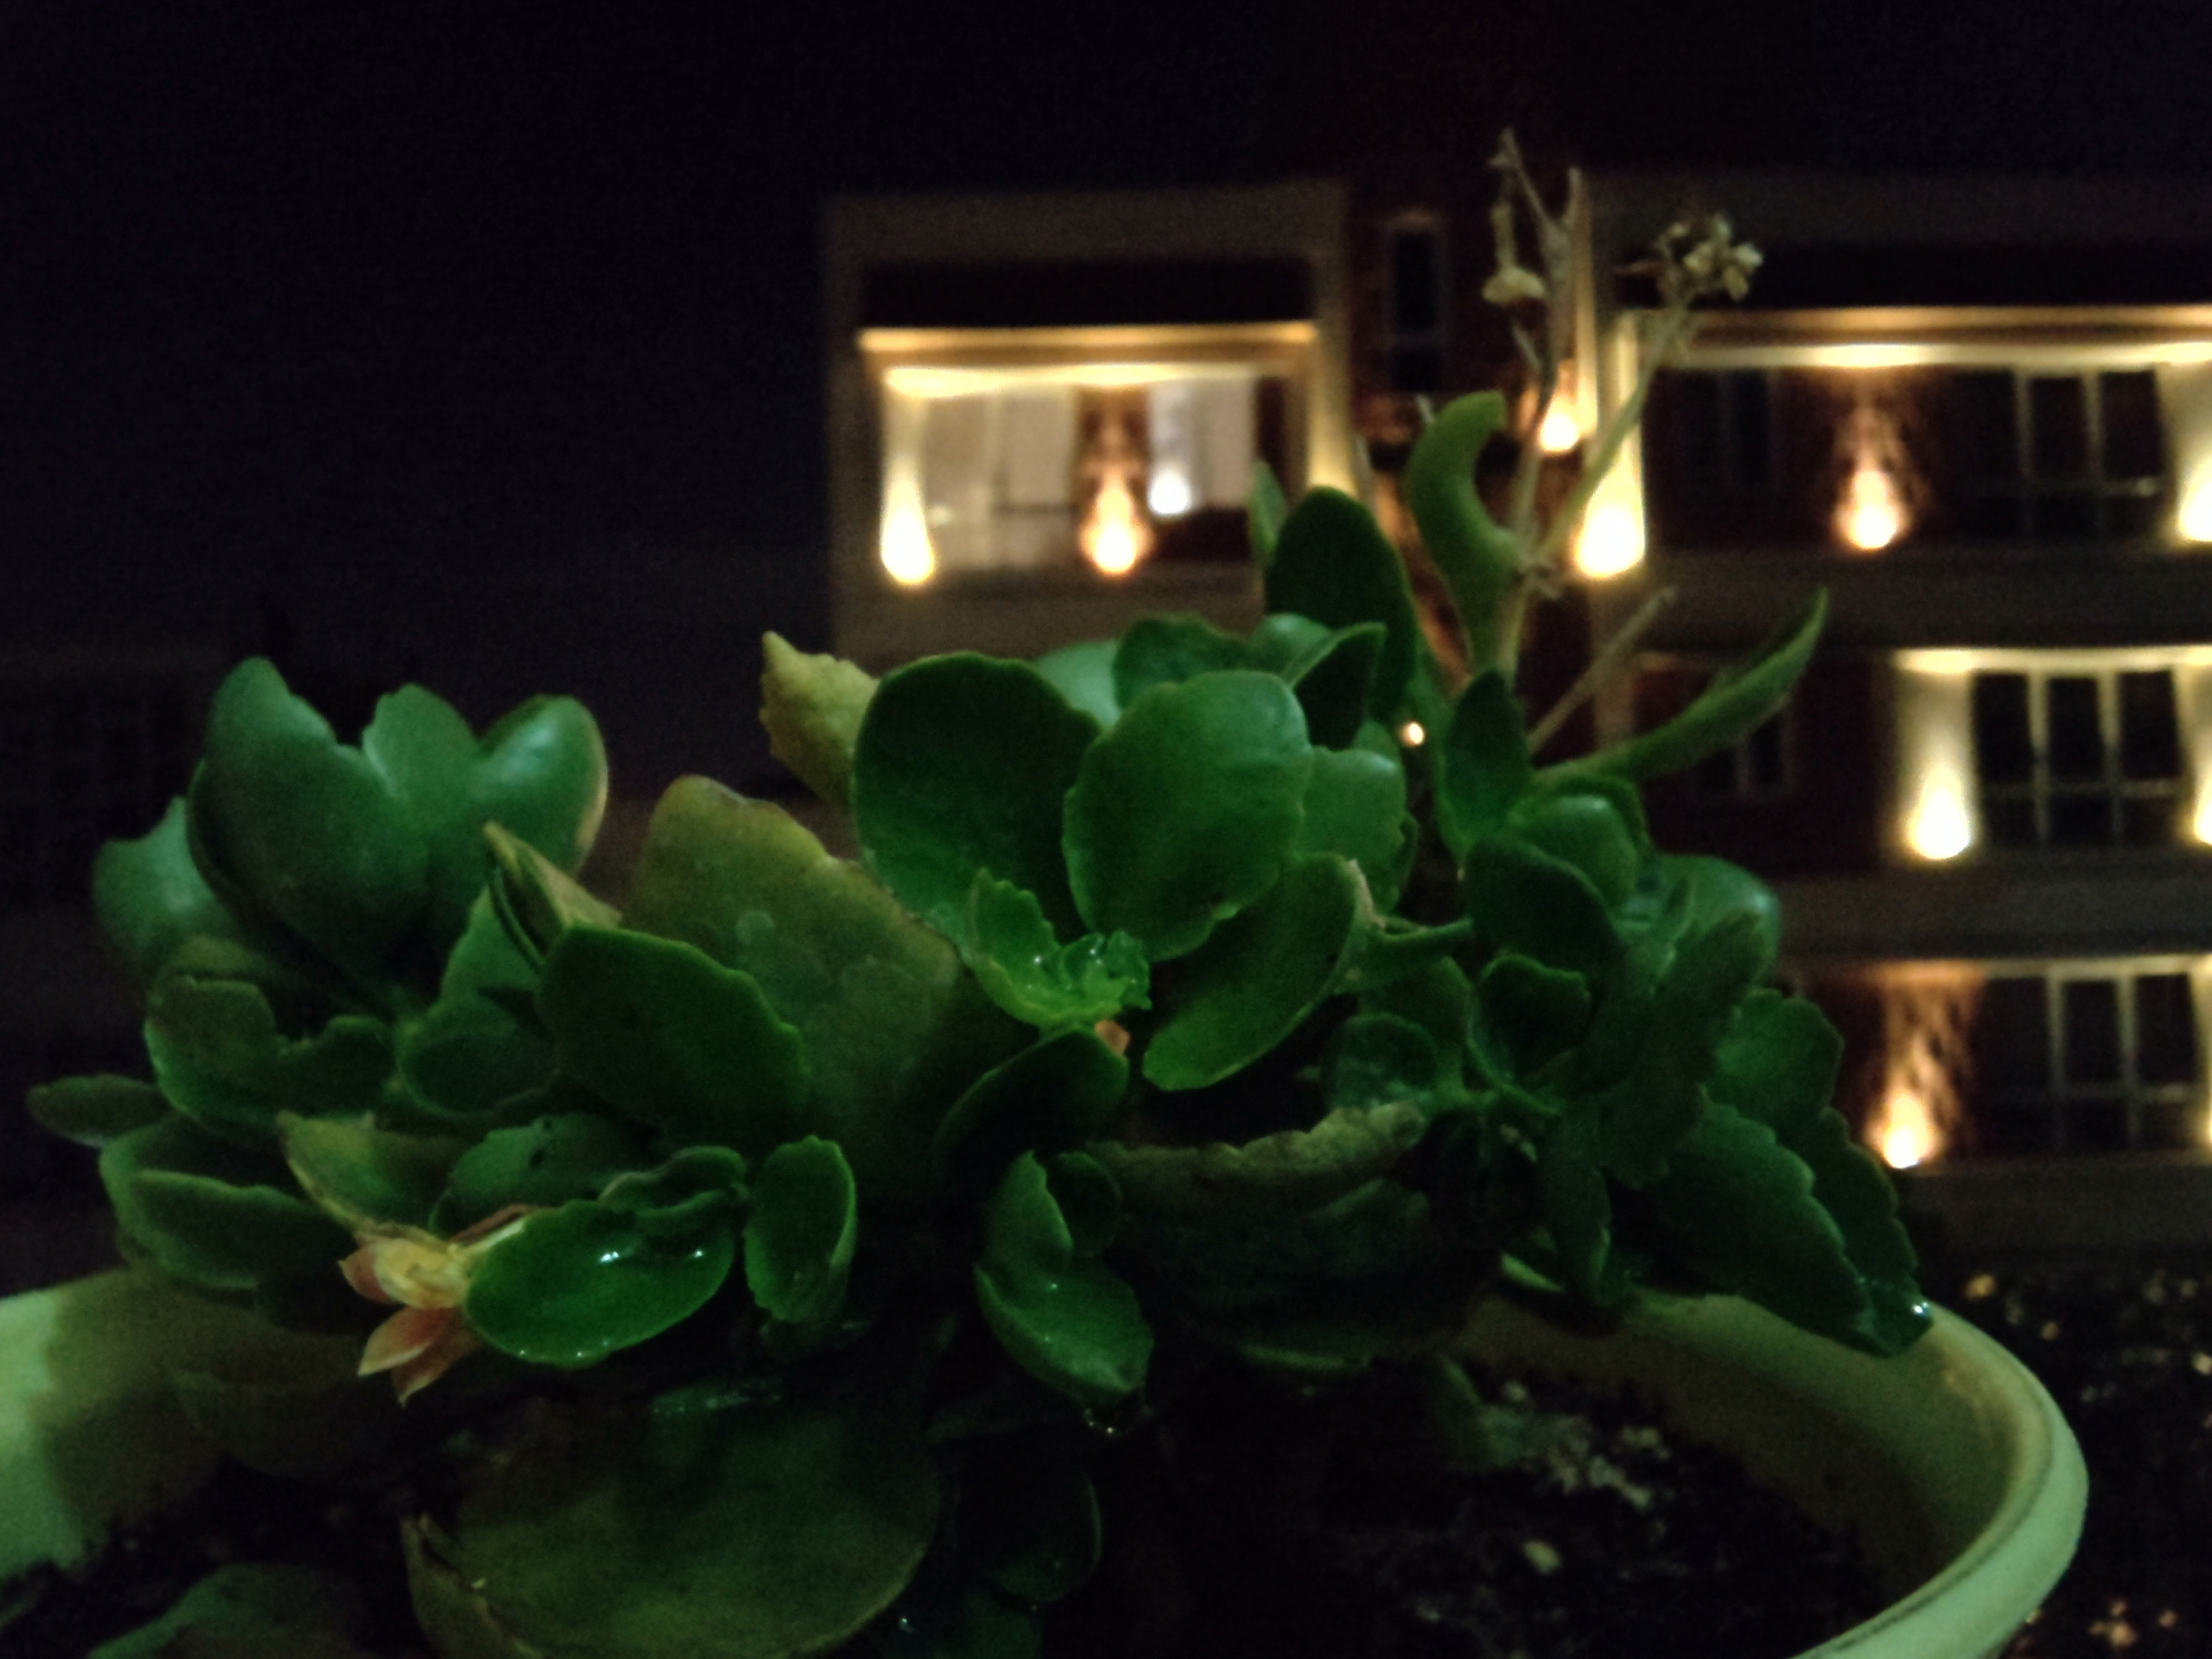 عکس نمونه با دوربین سرفیس دوئو در نور کم - گلدانی در تاریکی